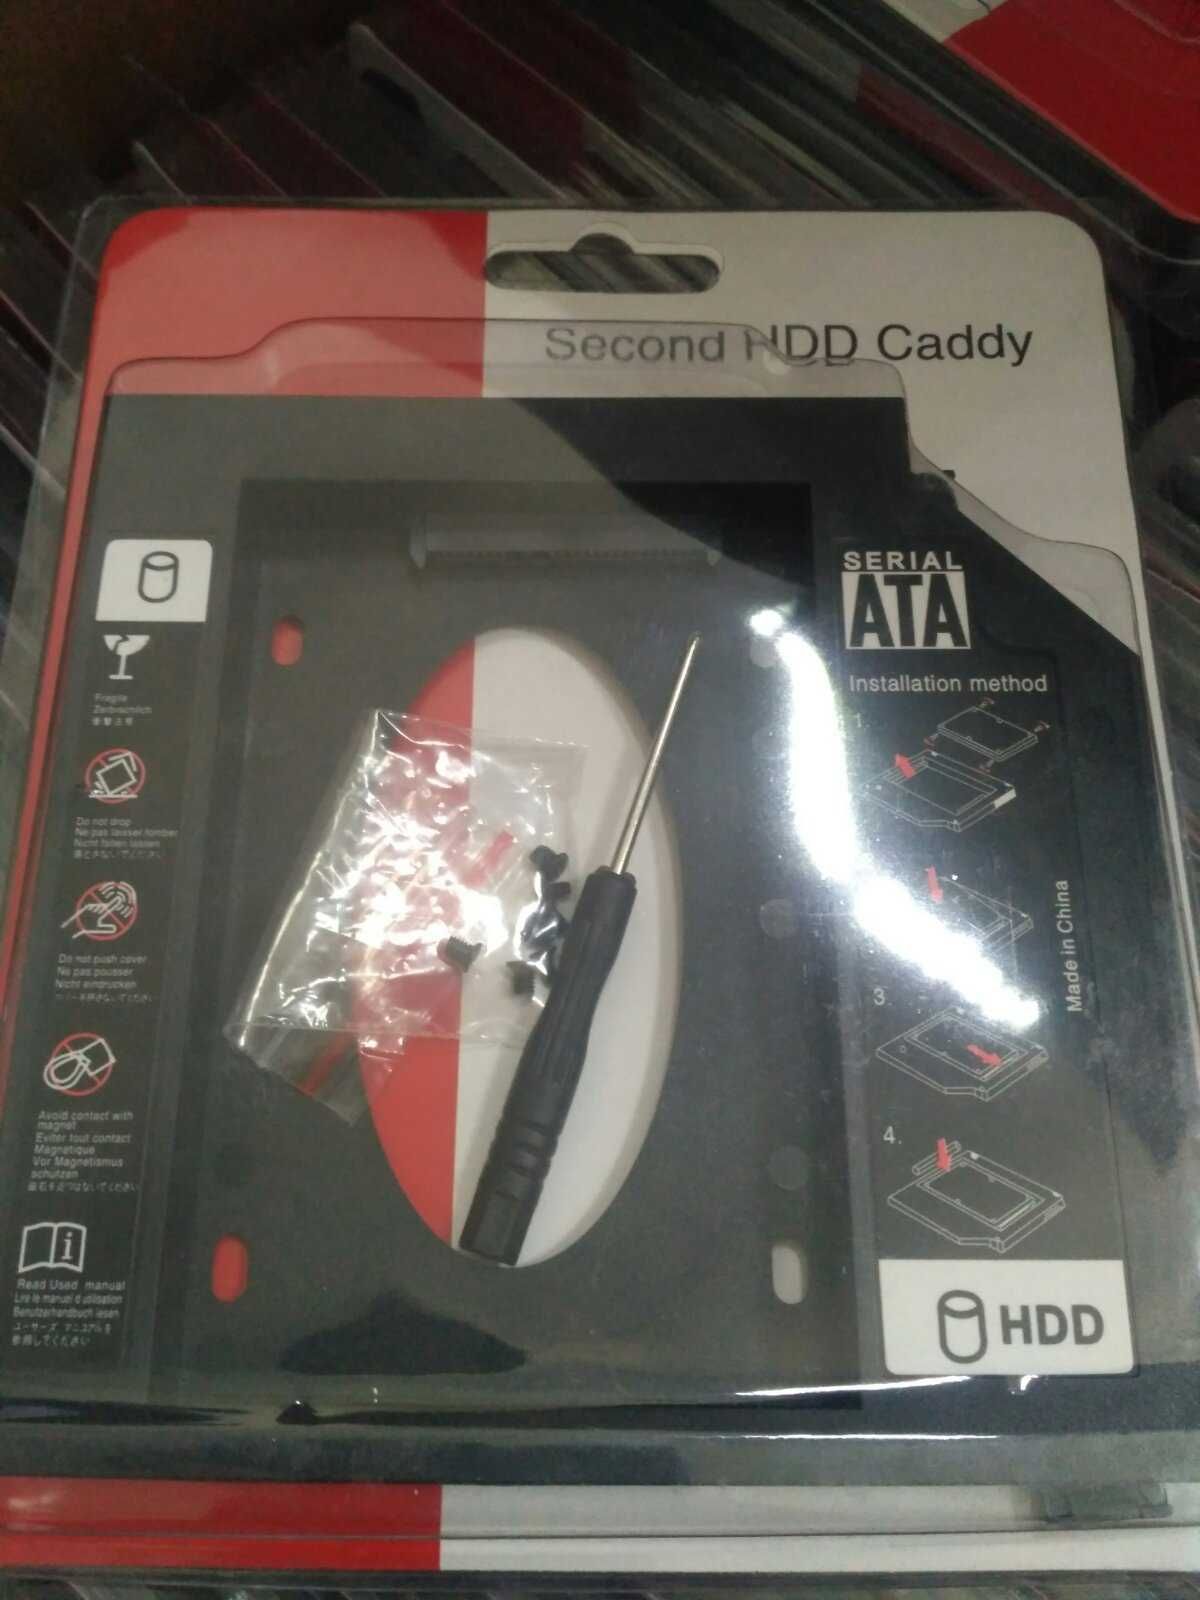 Кишеня Оptibay, оптібей, caddy 9.5 / 12.7 мм  адаптер SSD HDD, карман.